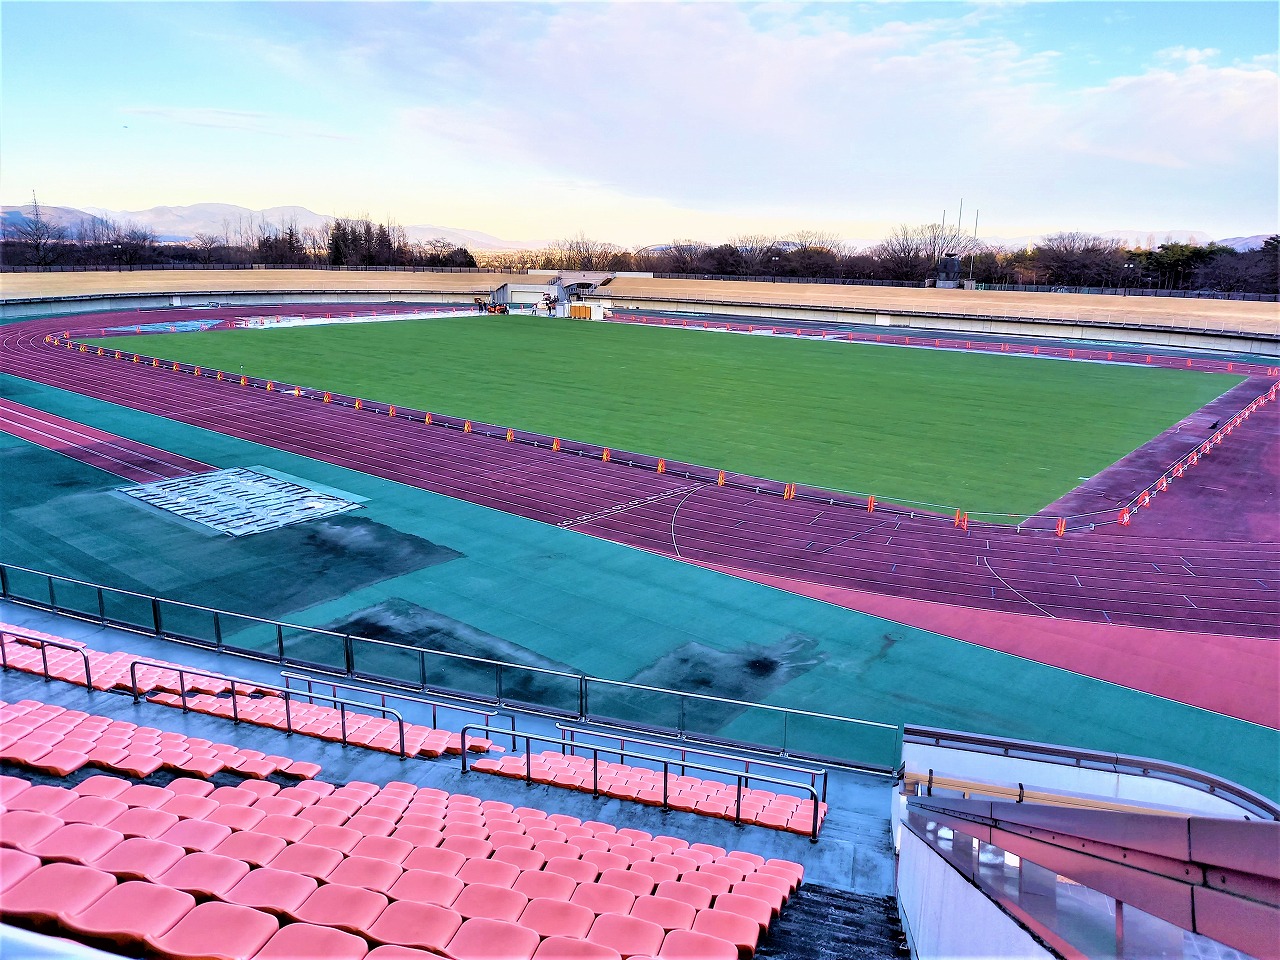 福島県営あづま陸上競技場、ティフスポーツで張替完了しました。